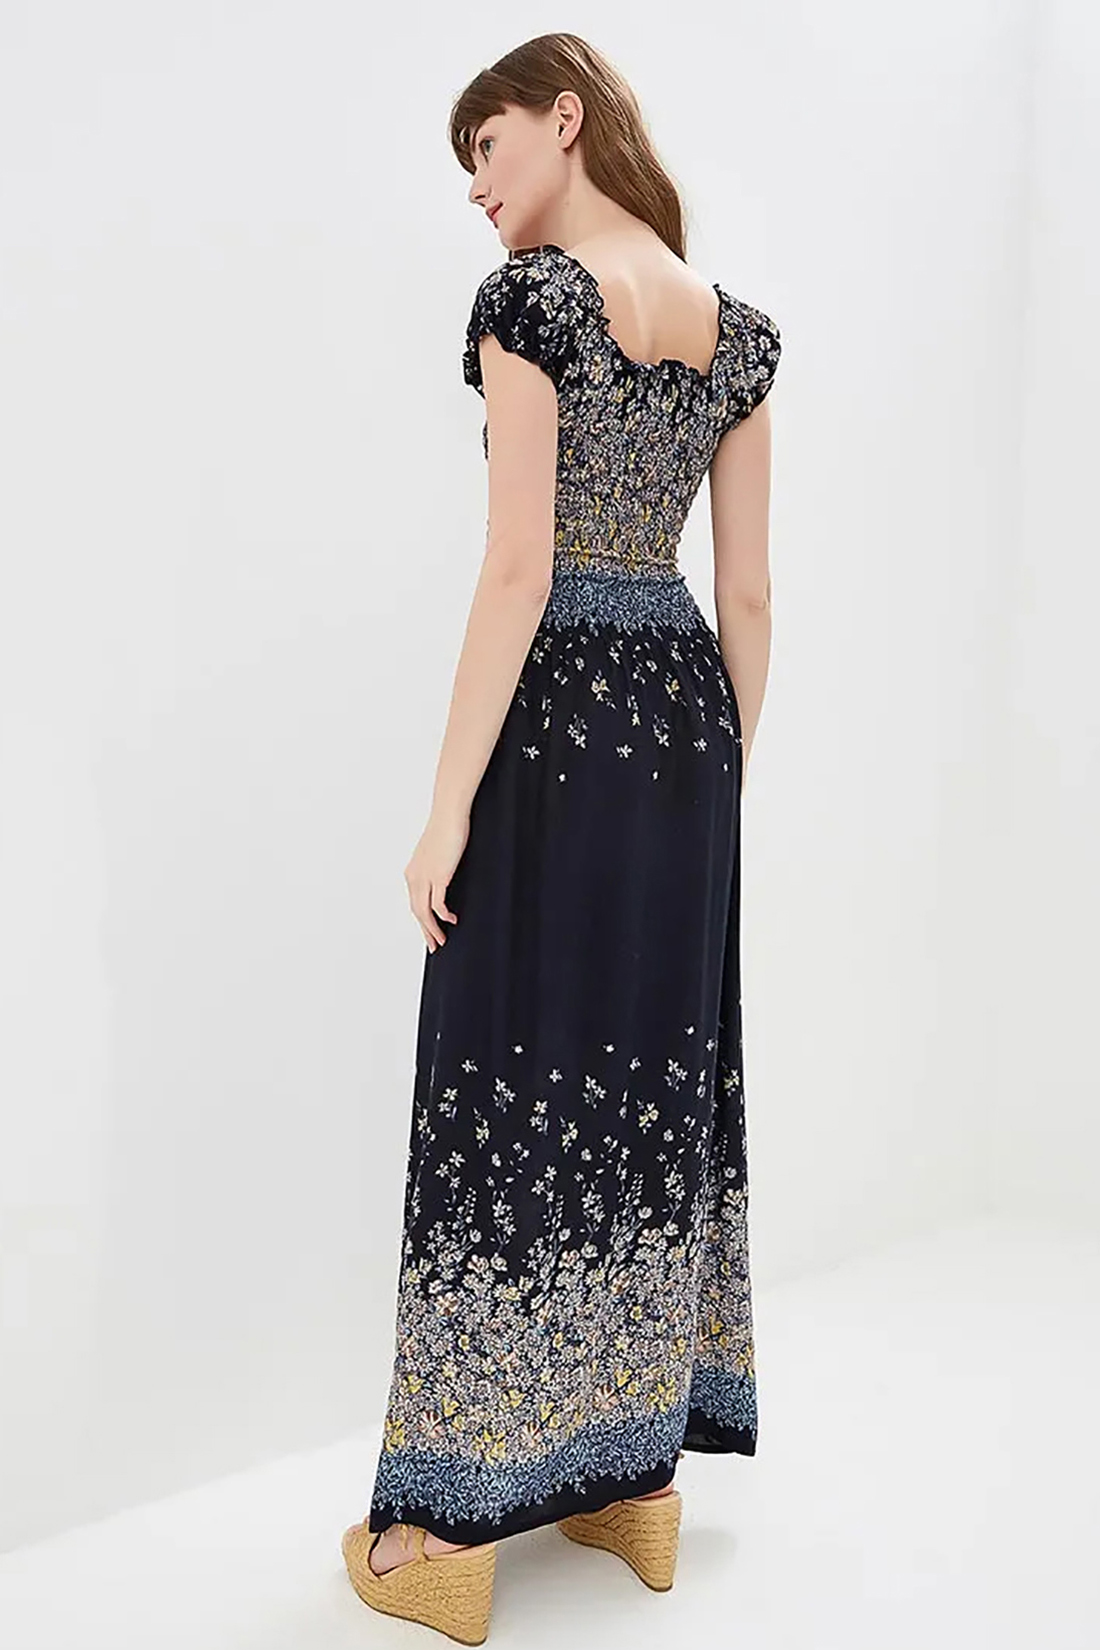 Платье из купонного материала (арт. baon B459071), размер XS, цвет dark navy printed#синий Платье из купонного материала (арт. baon B459071) - фото 2